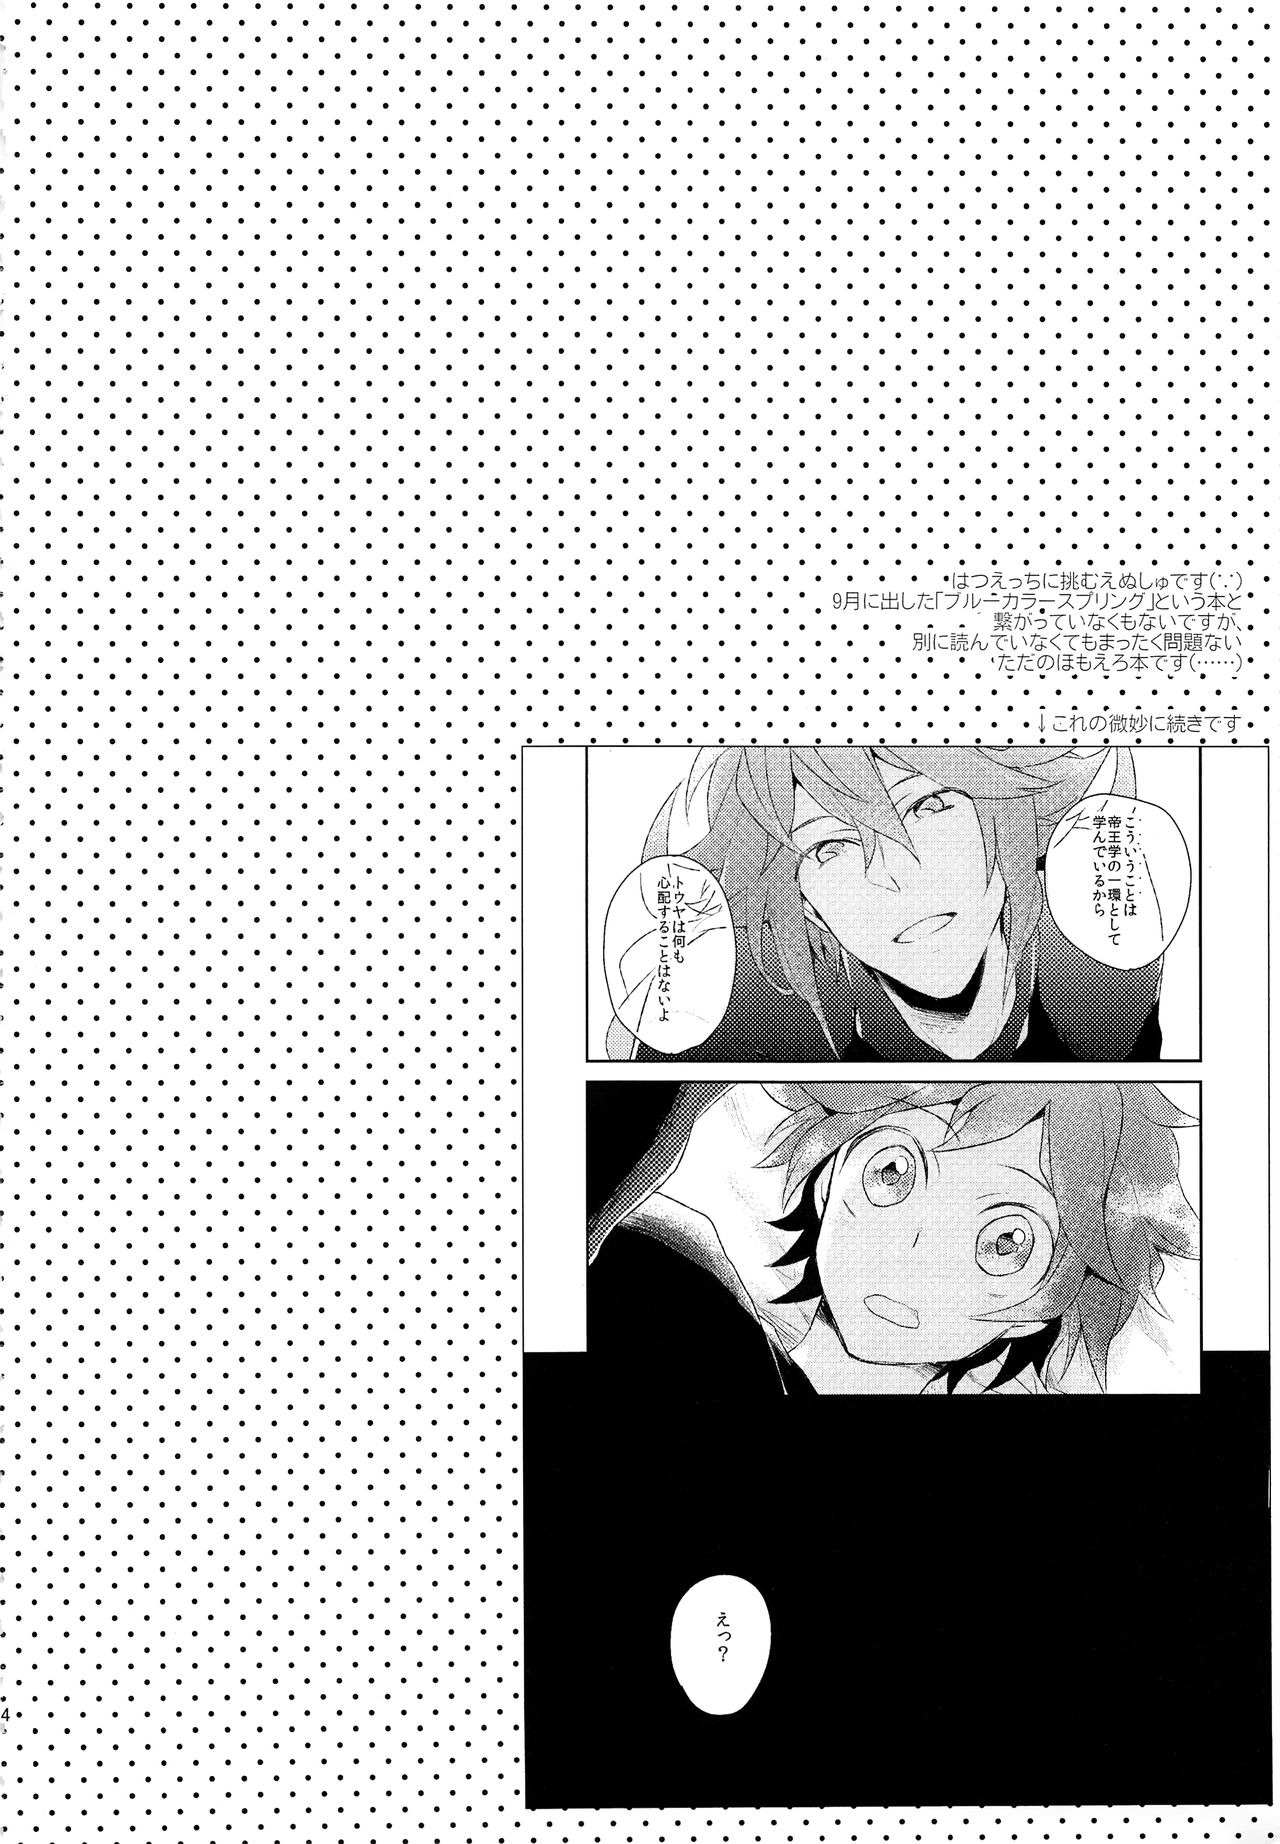 (SPARK7) [ritard.A2 (Shitaji Mochimochi)] Otona ga Oshiete Kurenai Koto (Pokémon Black and White) 2